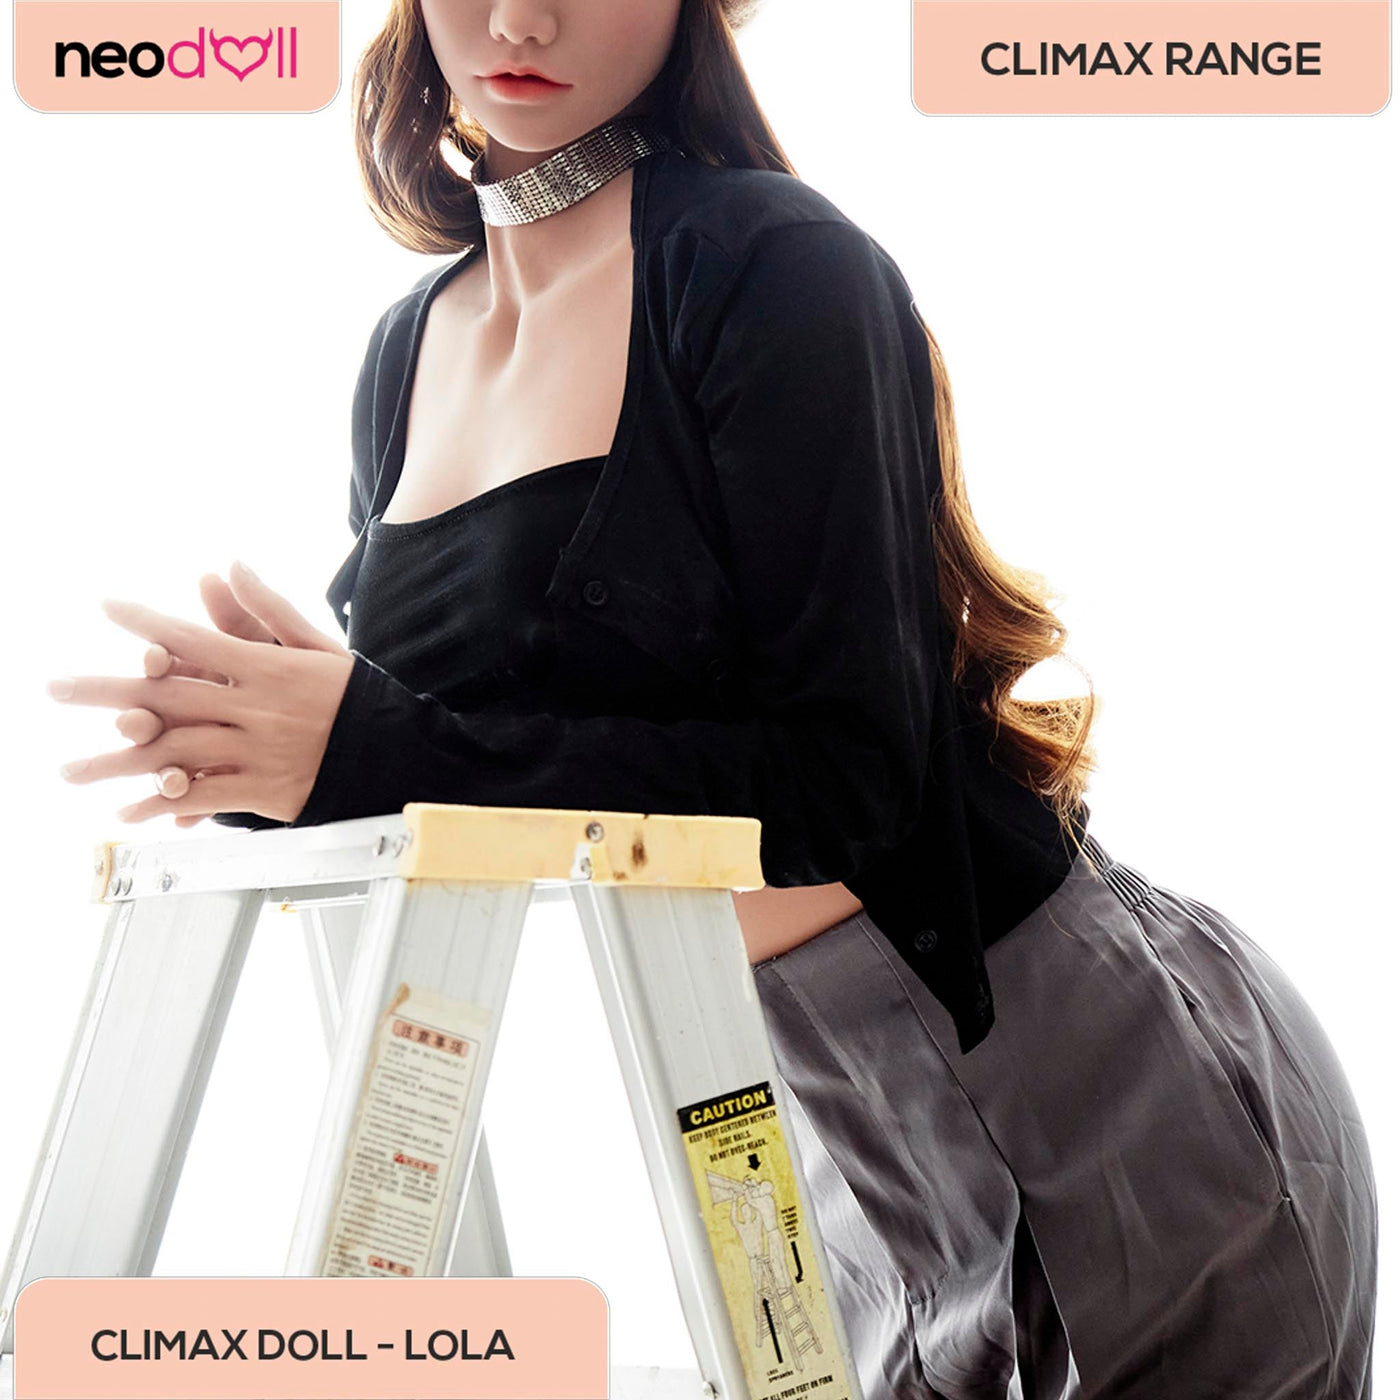 Climax Doll - Lola - Realistic Sex Doll - Gel Breast - 158cm - Tan